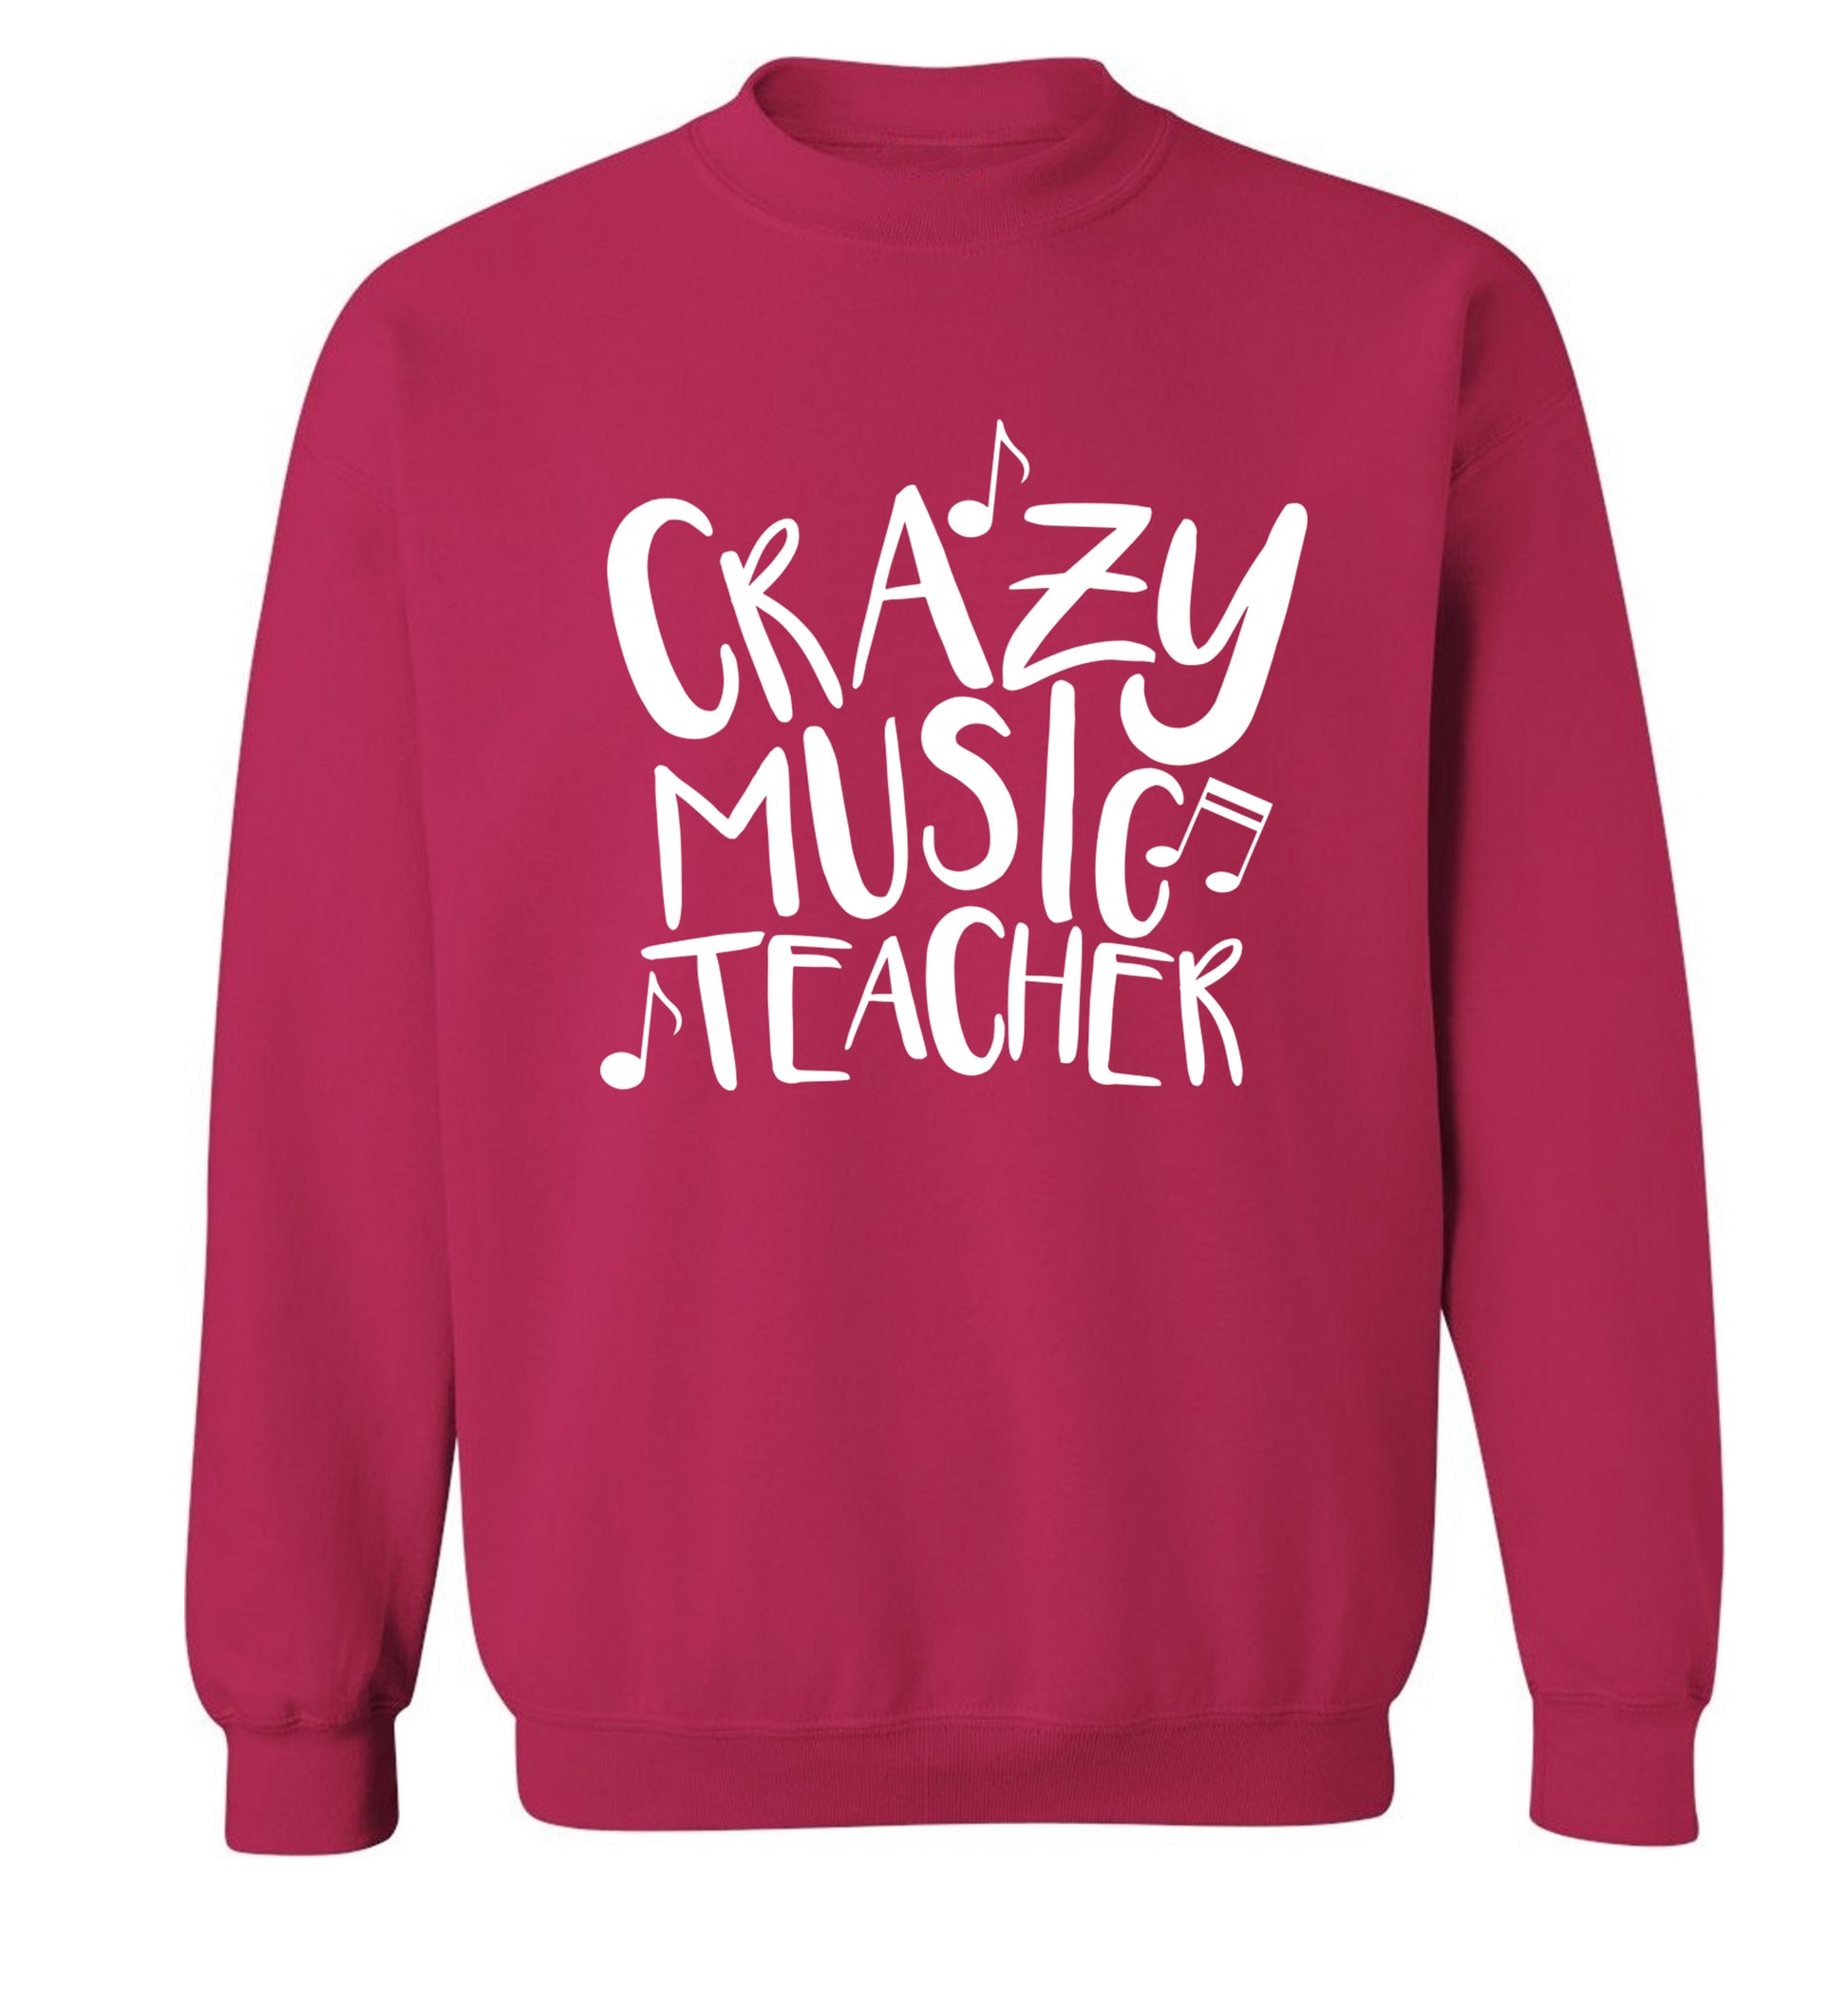 Crazy music teacher Adult's unisex pink Sweater 2XL